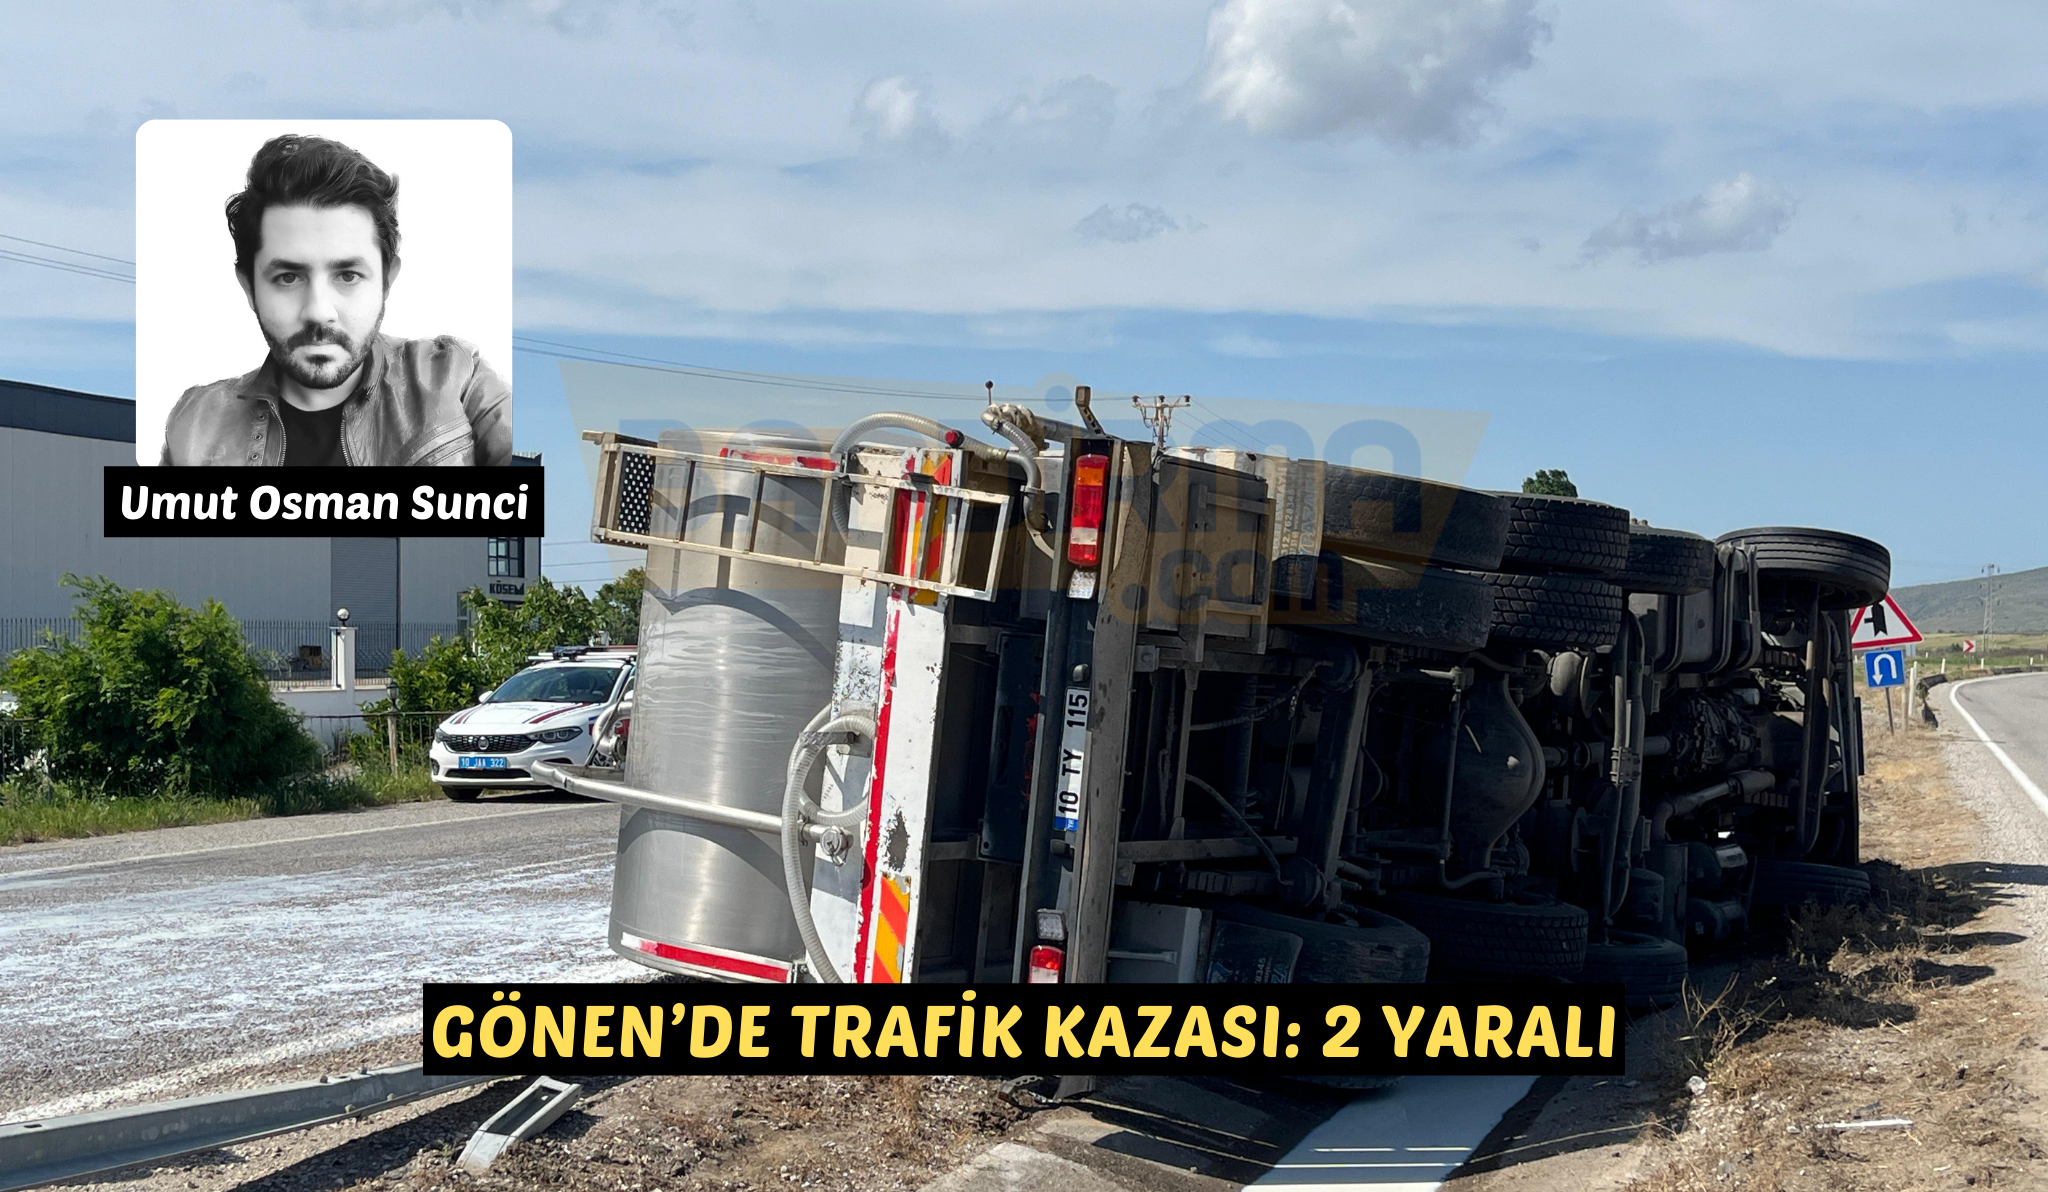 Gönen’de trafik kazası: 2 yaralı